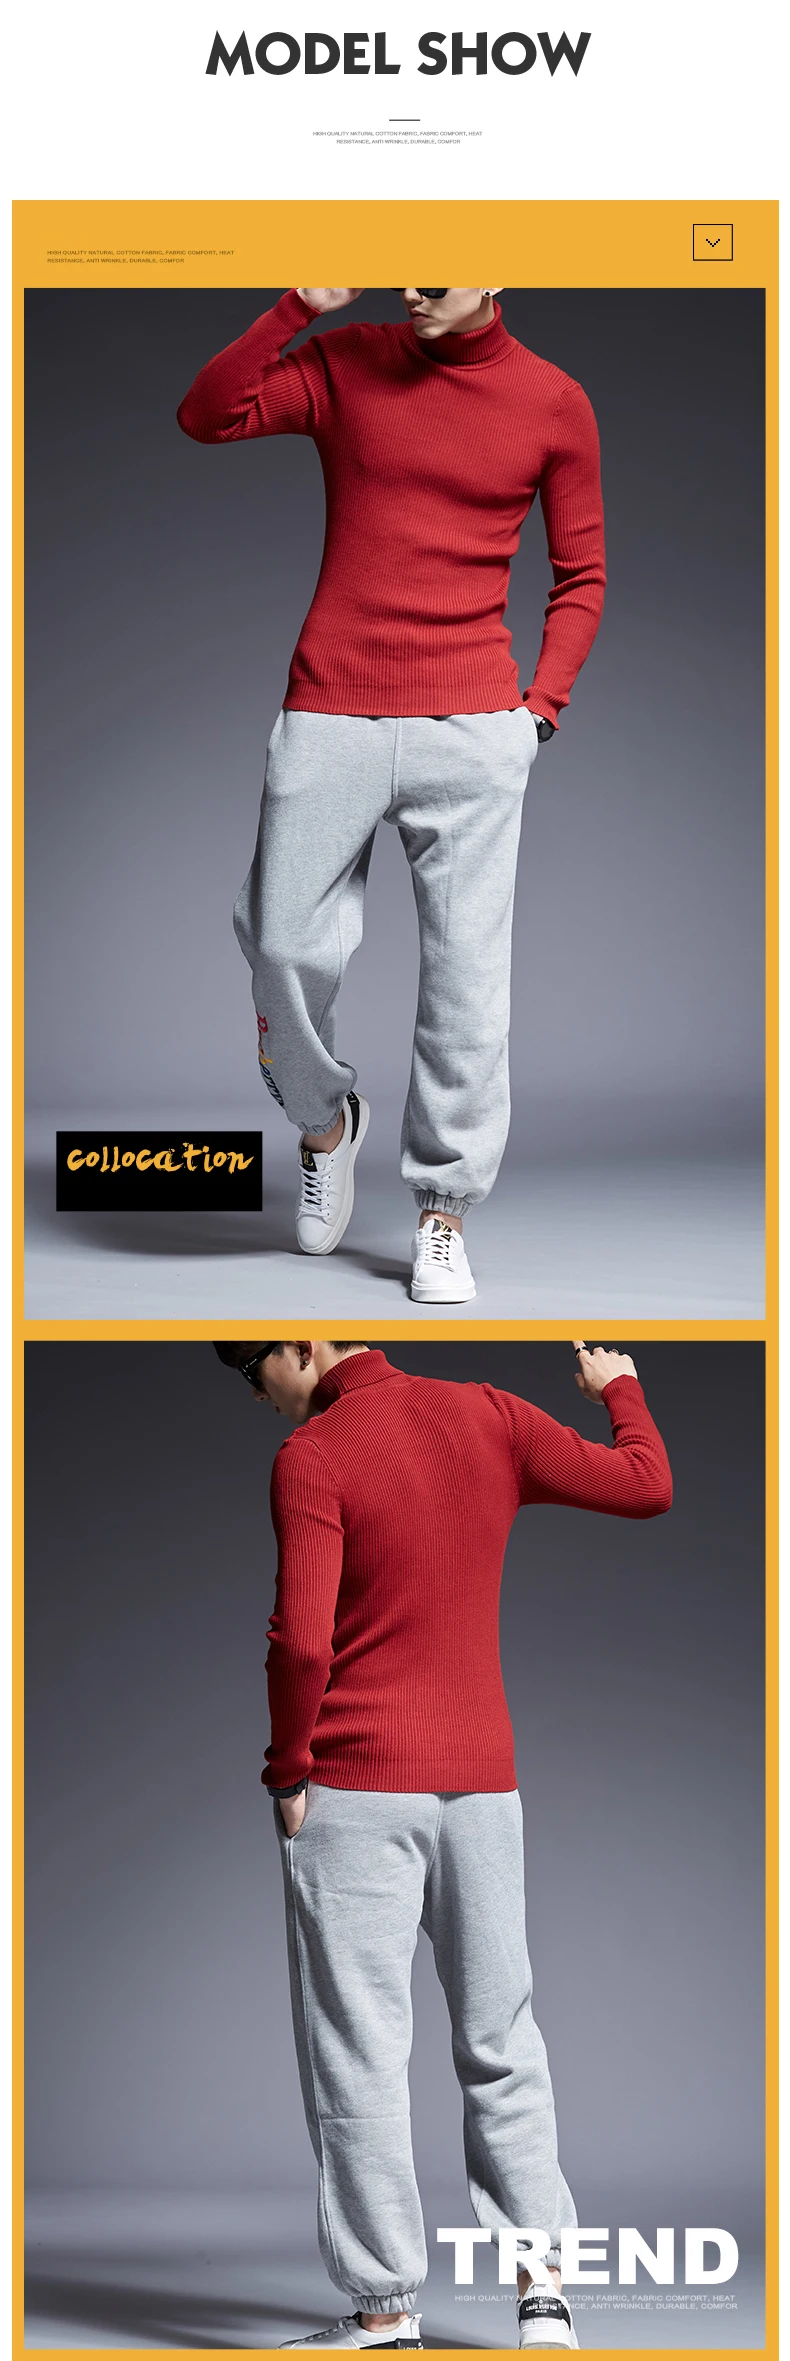 2019 новый модный бренд Свитера мужские s пуловер сплошной цвет Slim Fit Джемперы Вязание Теплый зимний Корейский стиль повседневная одежда